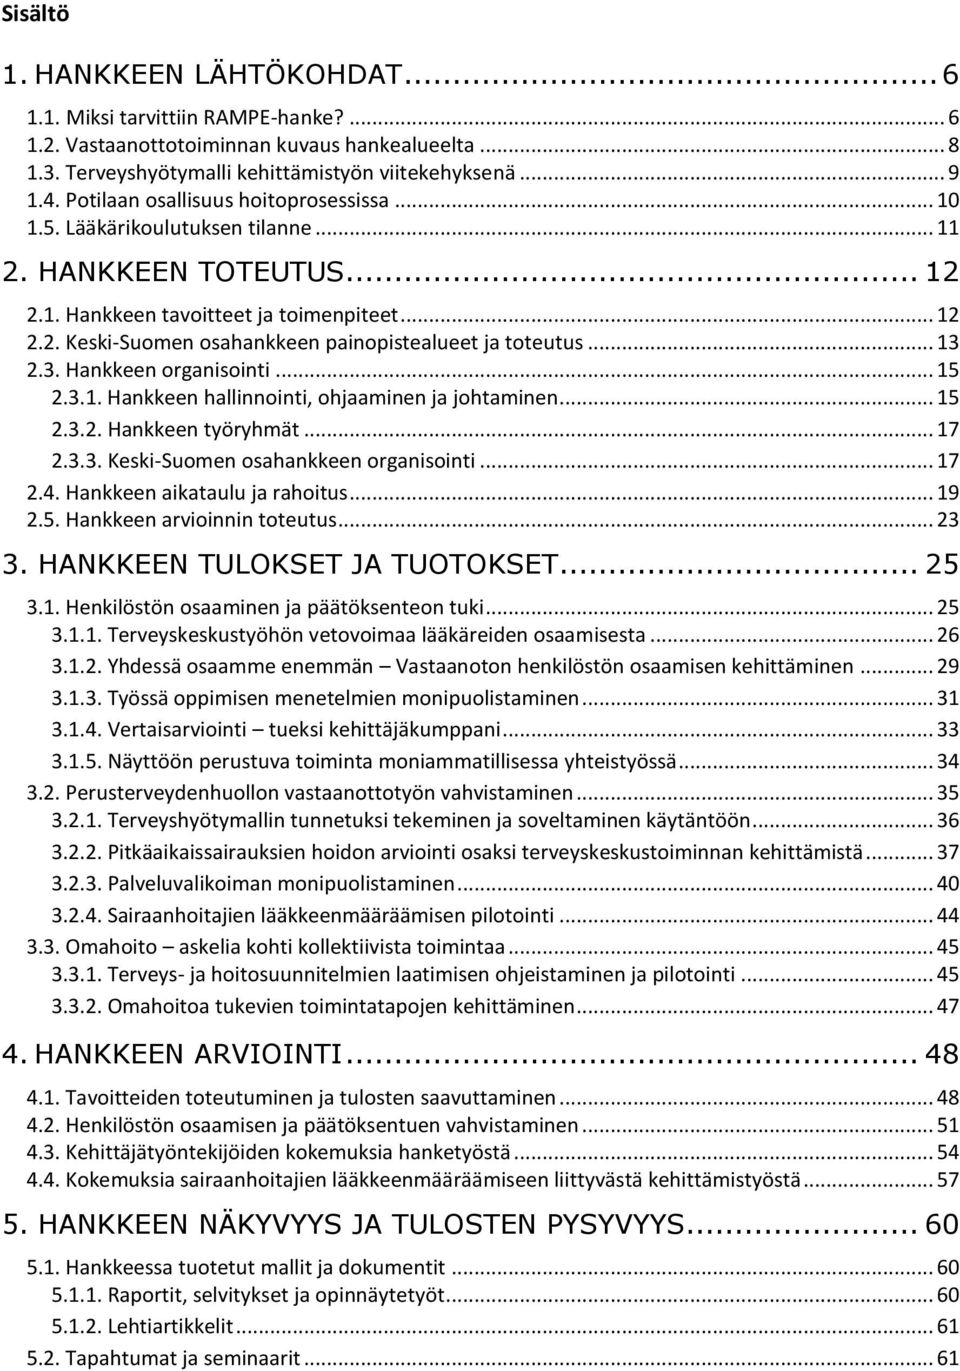 .. 13 2.3. Hankkeen organisointi... 15 2.3.1. Hankkeen hallinnointi, ohjaaminen ja johtaminen... 15 2.3.2. Hankkeen työryhmät... 17 2.3.3. Keski-Suomen osahankkeen organisointi... 17 2.4.